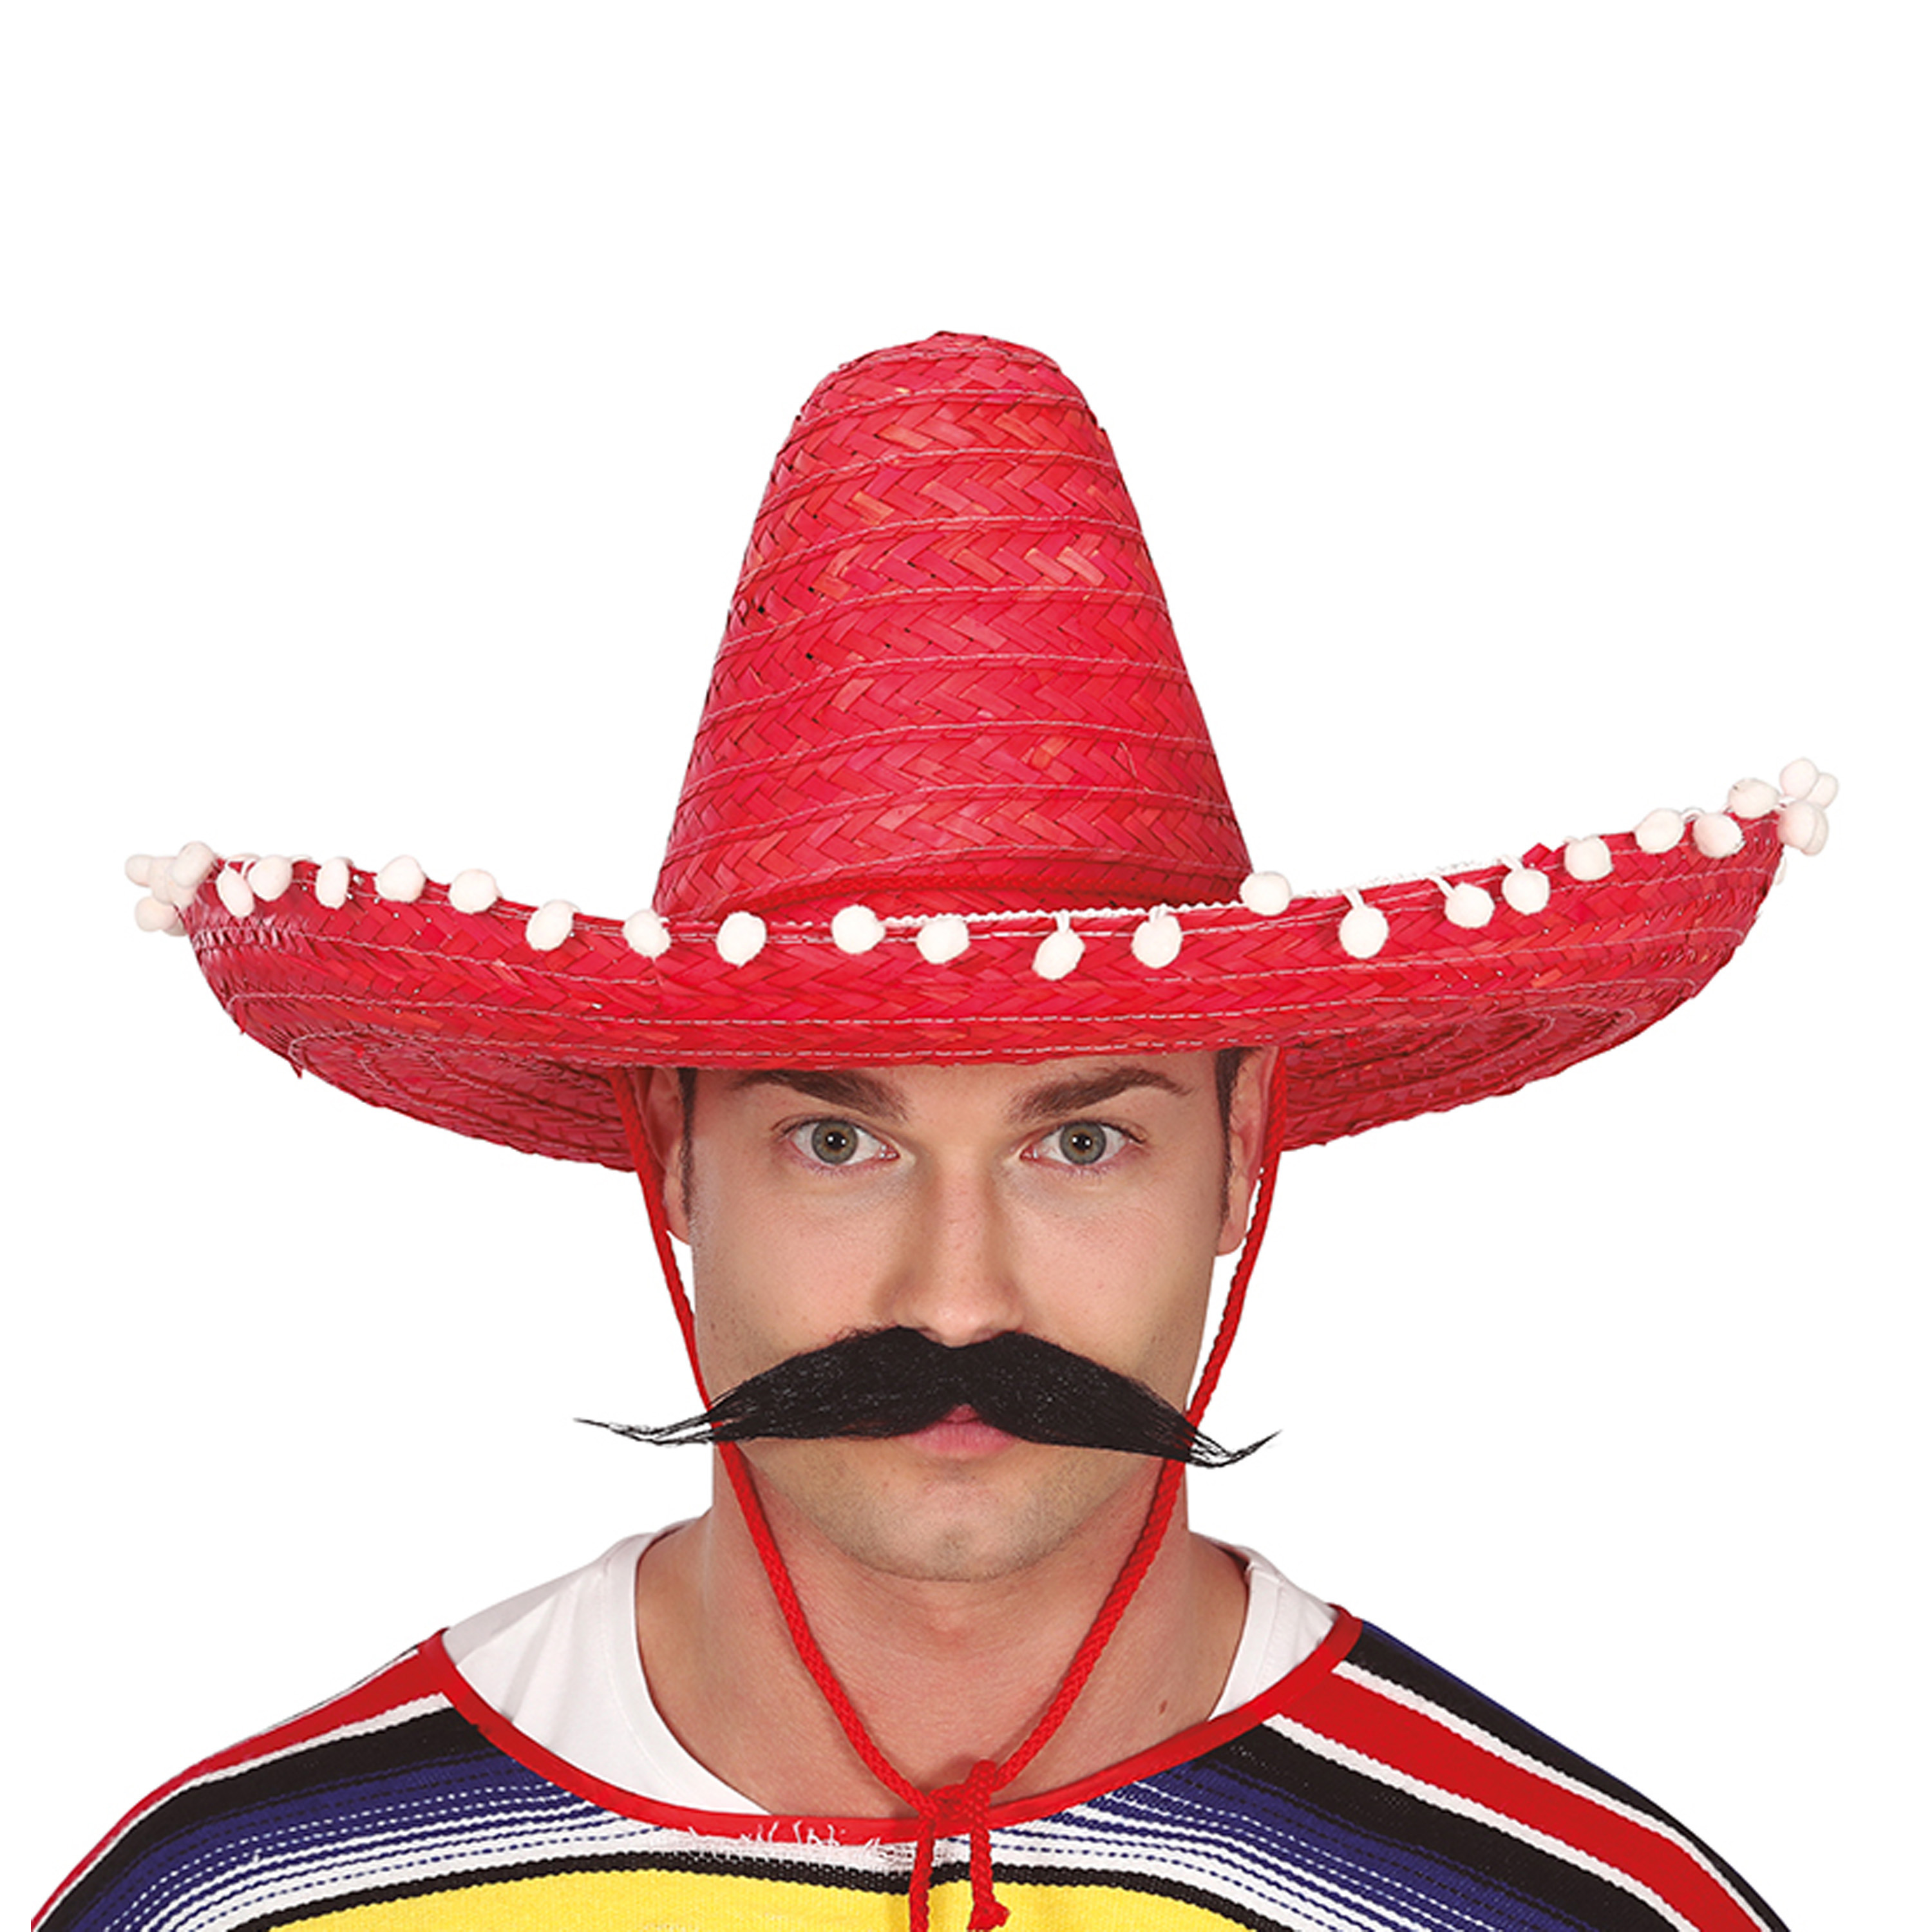 Mexicaanse Sombrero hoed voor heren carnaval-verkleed accessoires rood met ornamenten